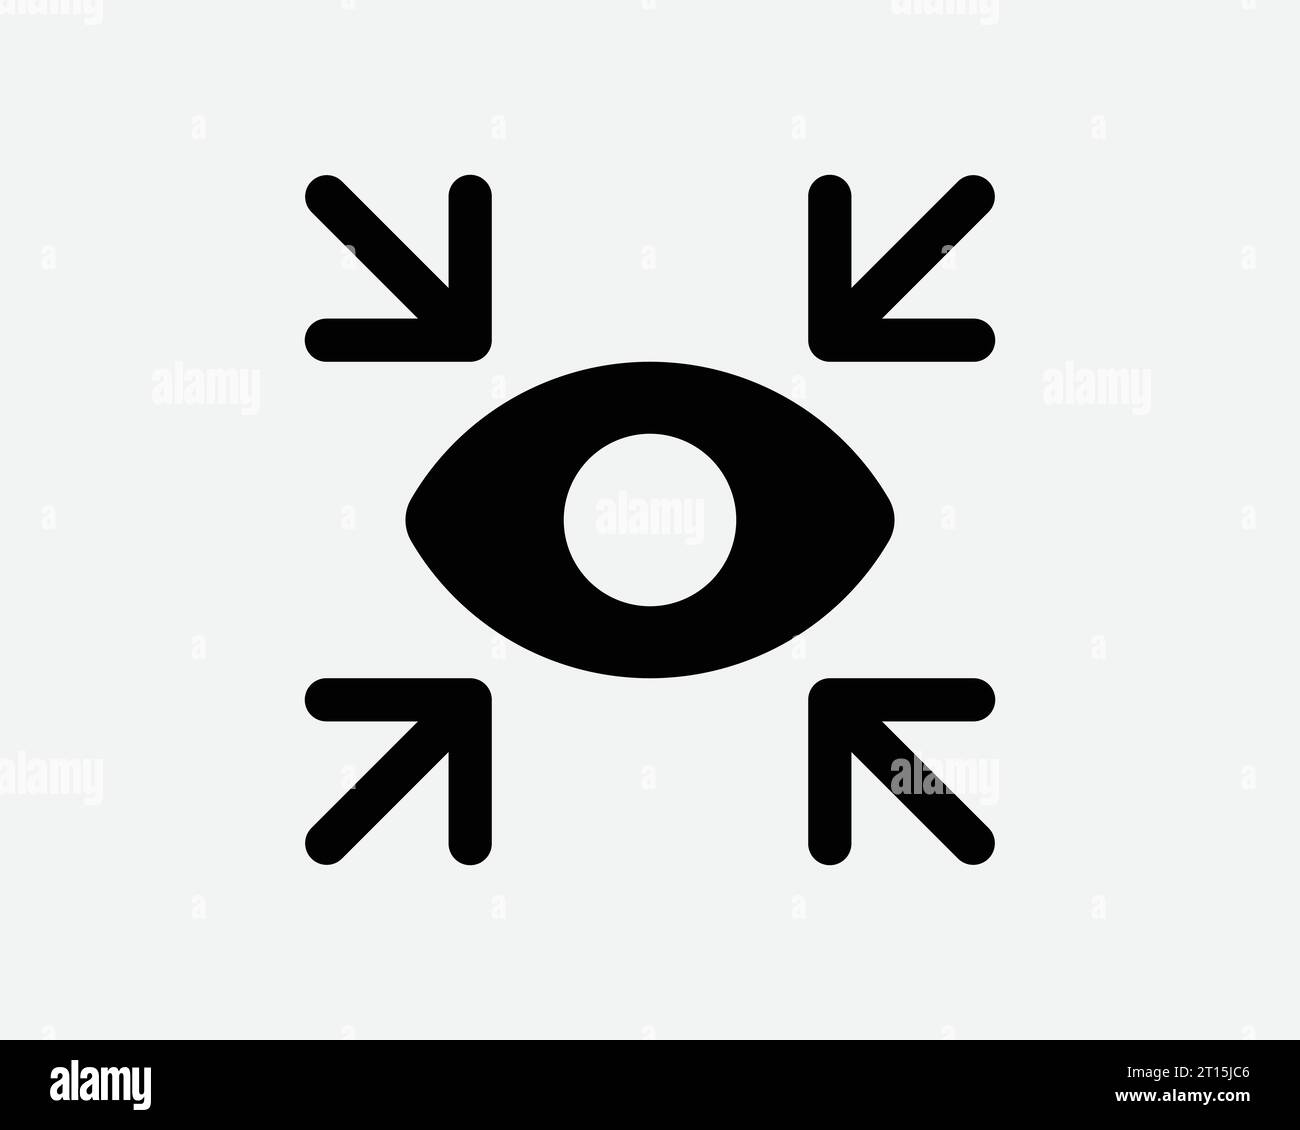 Augen vier Pfeile Symbol Bullseye Ziel Ziel 4-Punkt-Zeiger Fadenkreuz Sehvermögen Blick siehe Vision Schwarz weiß Form Linie Umrisszeichen Symbol EPS Vecto Stock Vektor